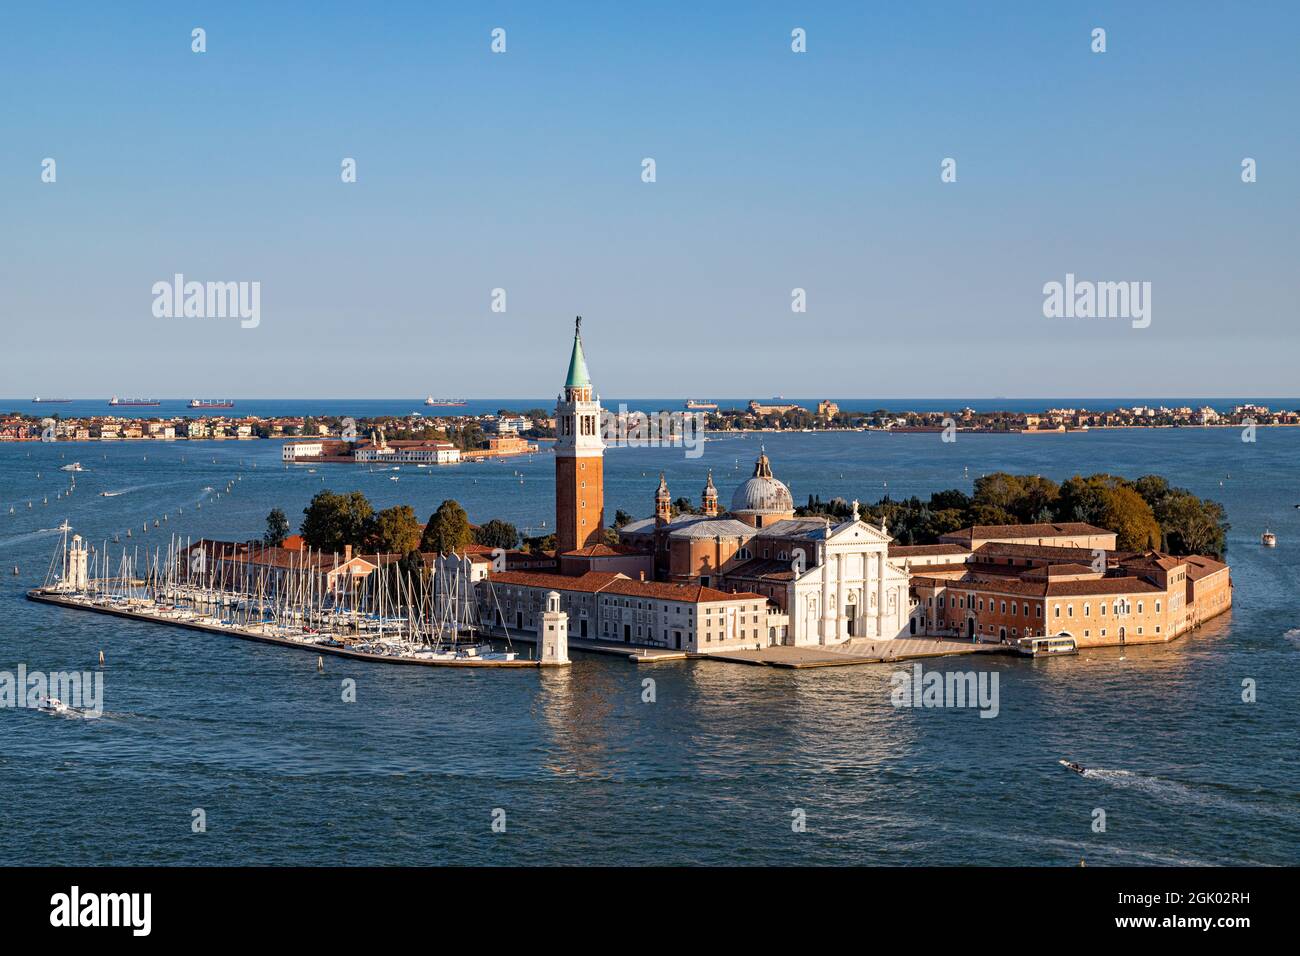 Vue aérienne de l'île de San Giorgio Maggiore, située en face de la place San Marco à Venise - Italie Banque D'Images